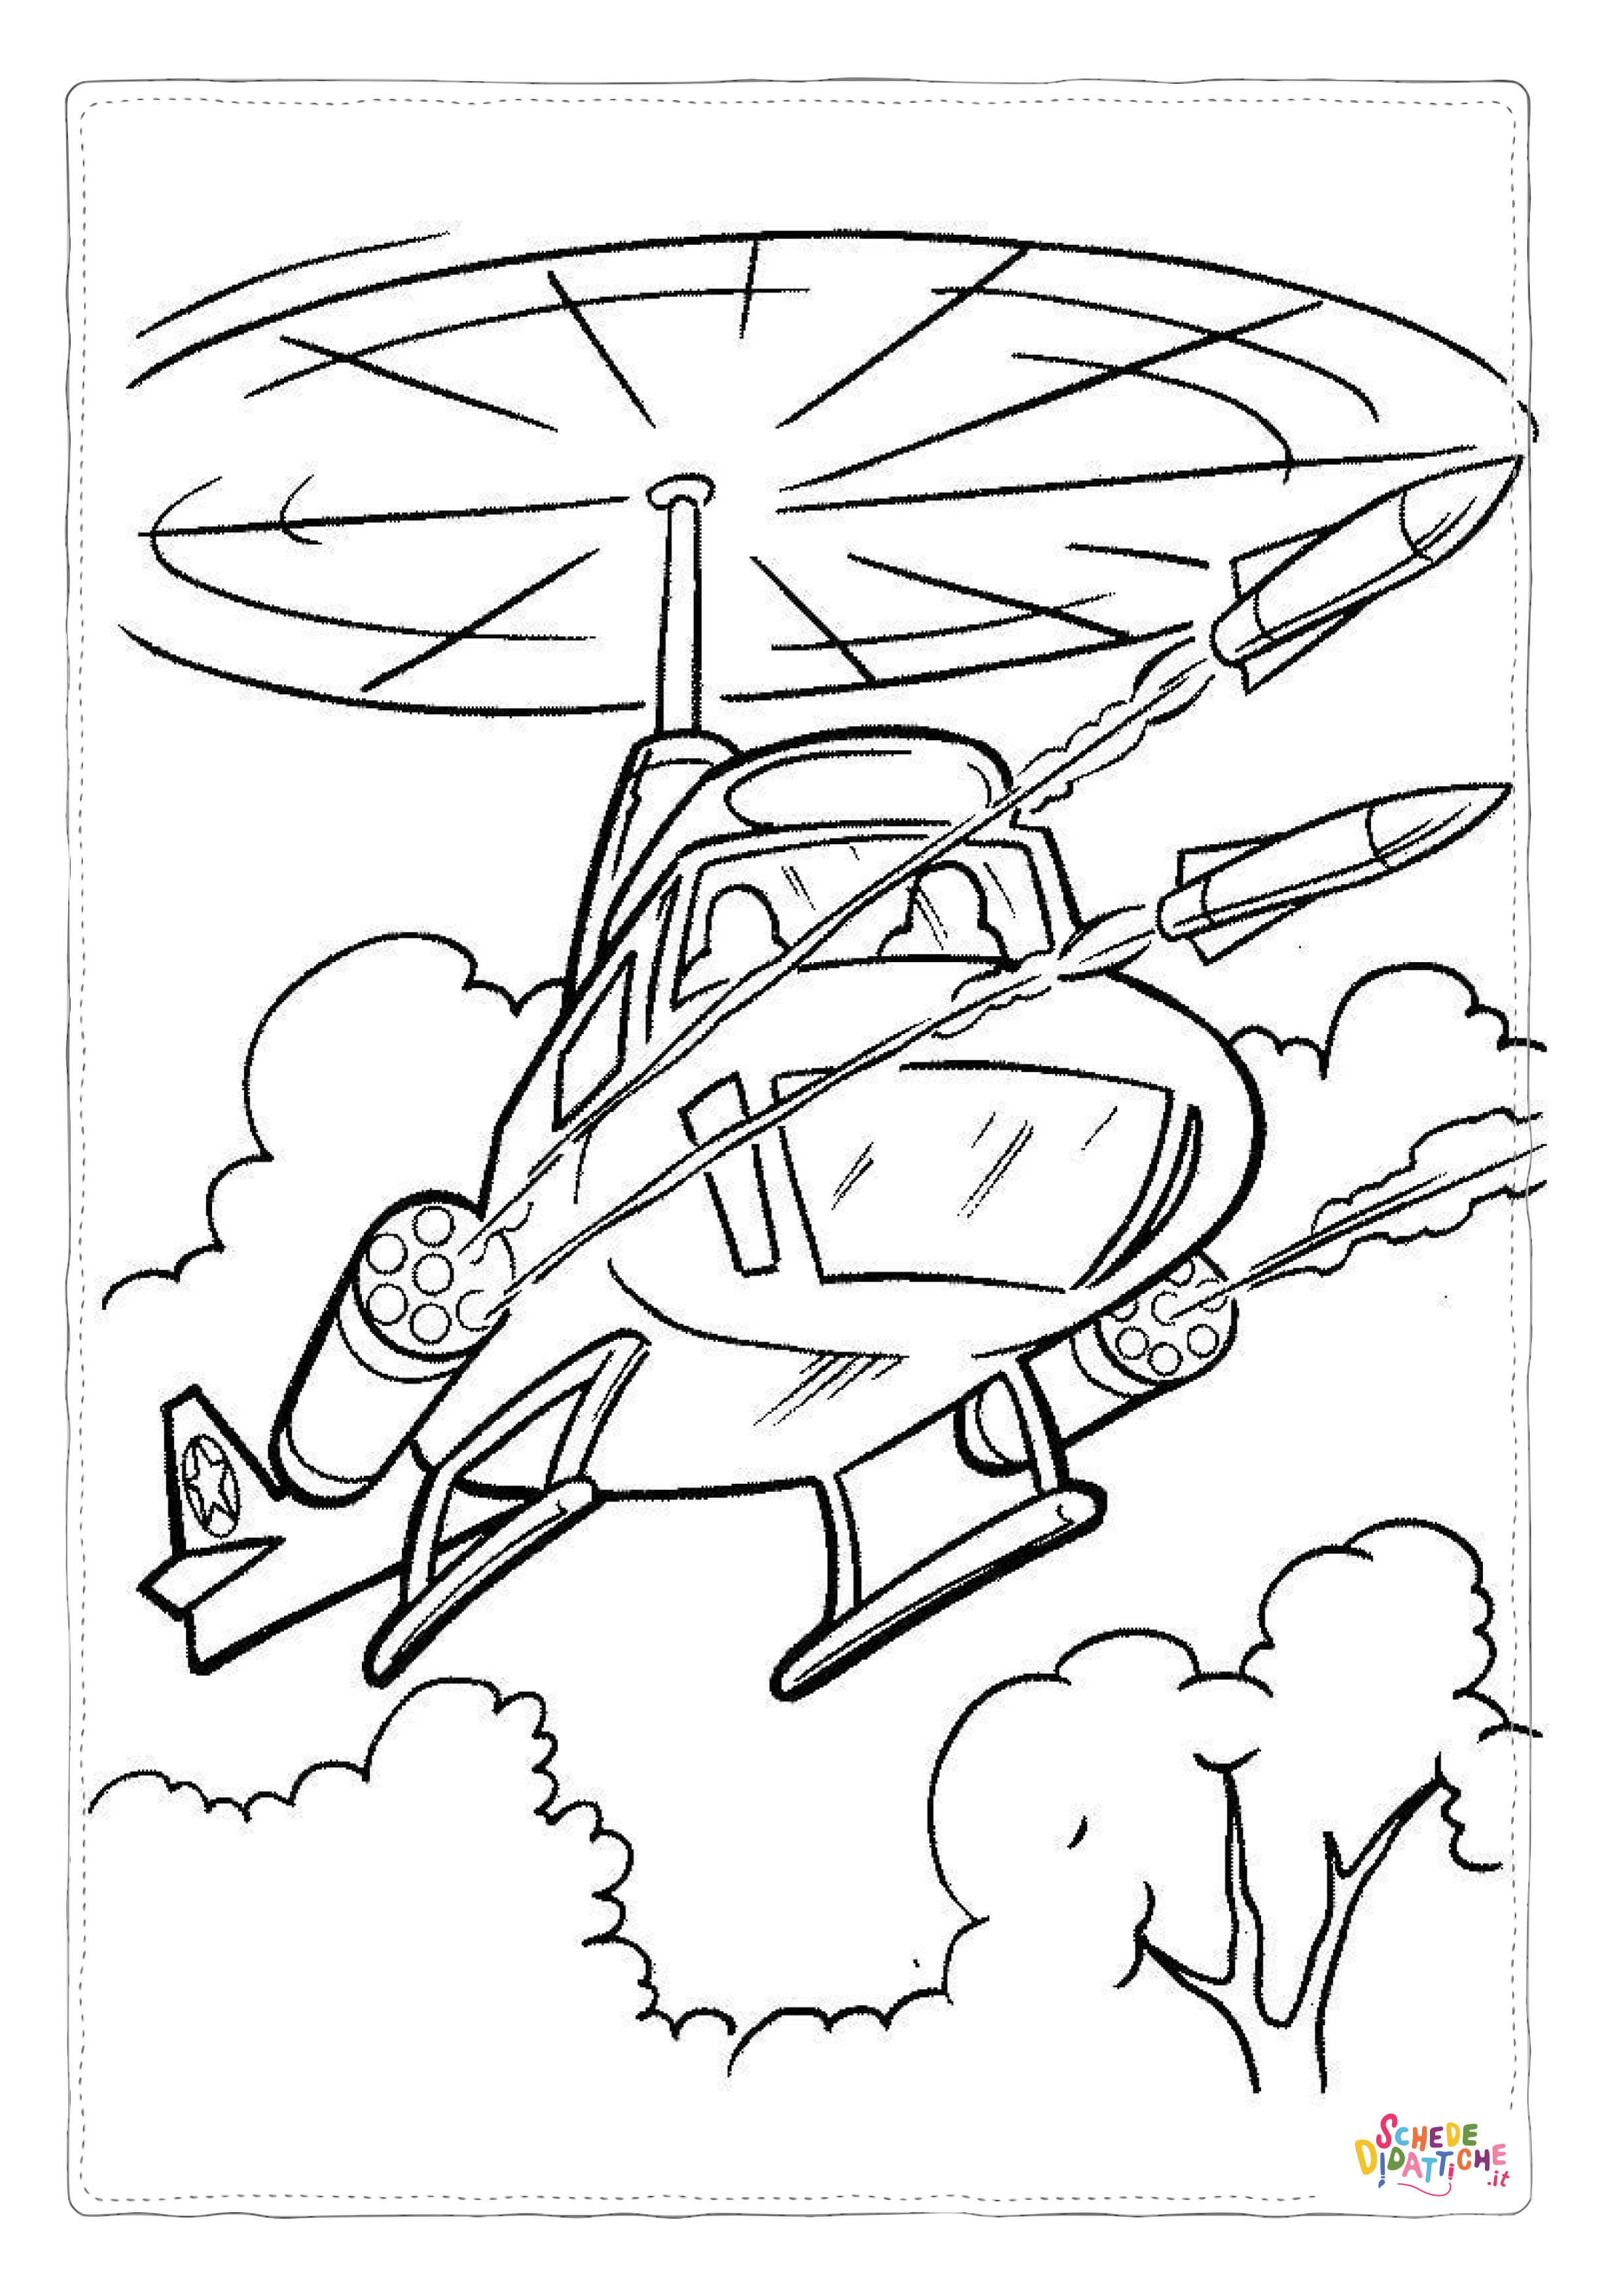 Disegno di elicottero militare da stampare e colorare 4